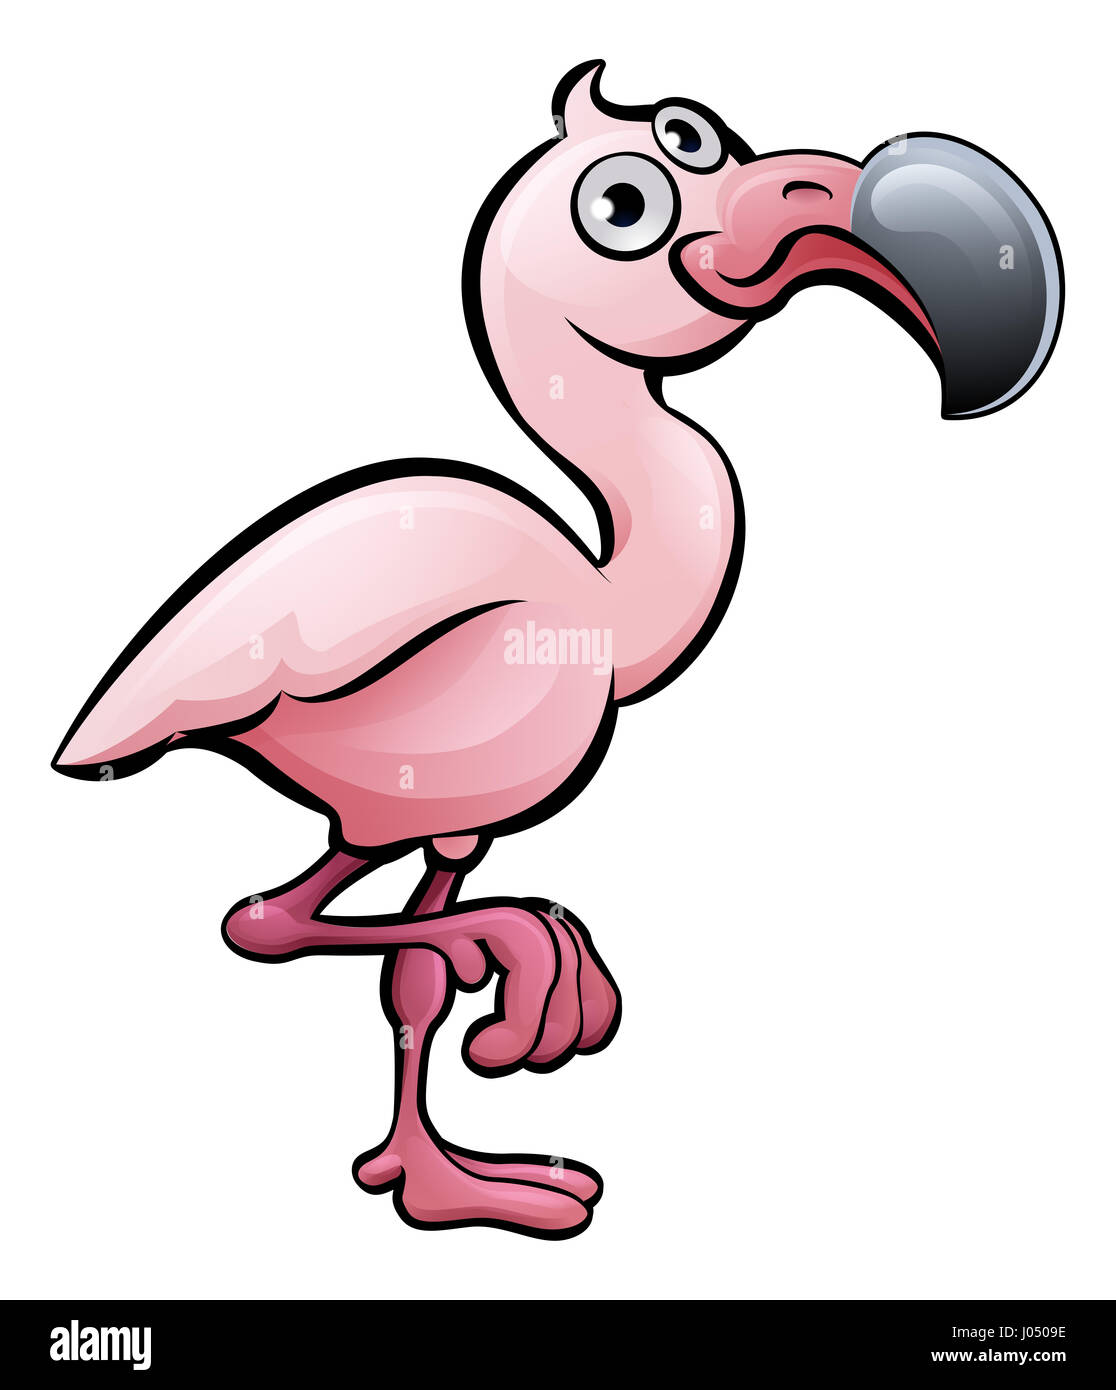 A flamingo bird safari animals cartoon character Stock Photo